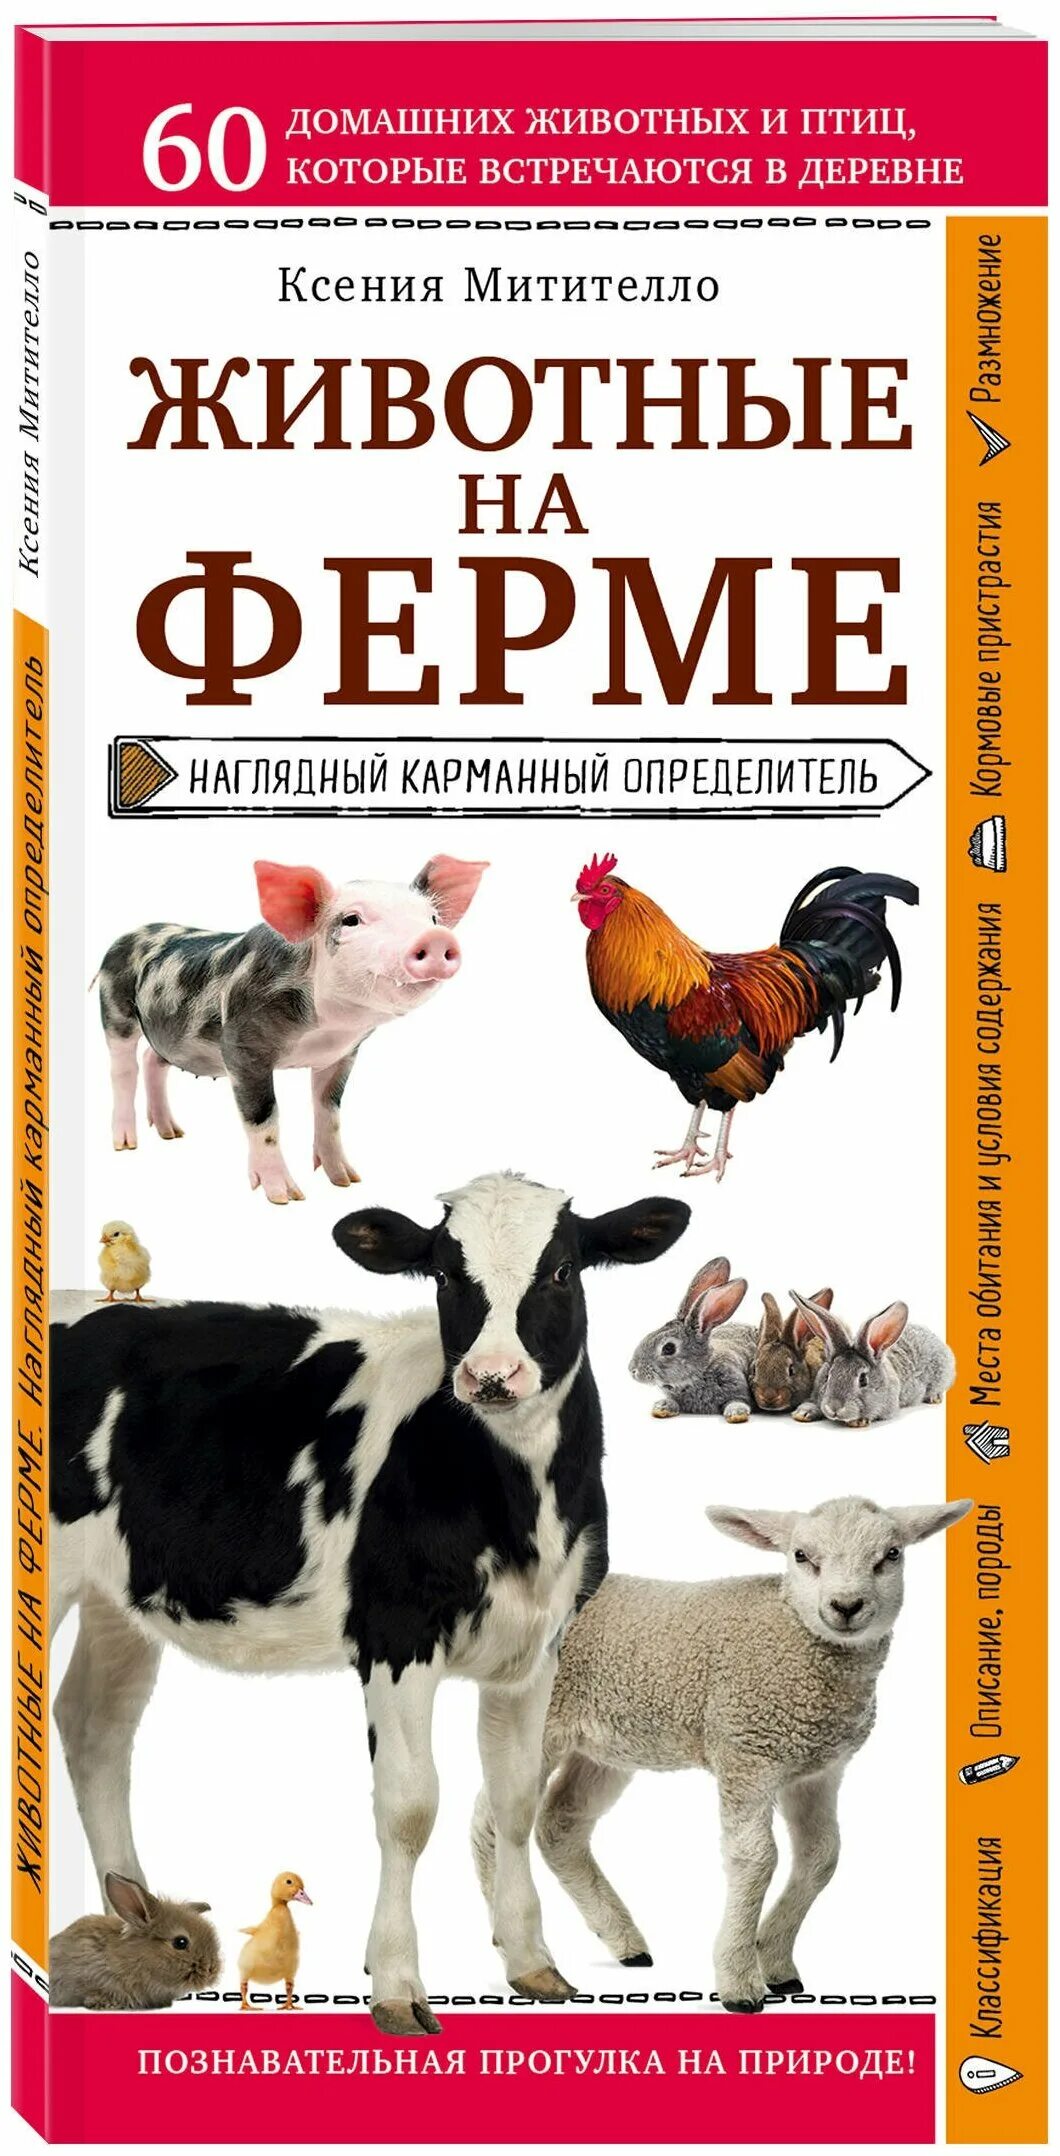 Книги о домашних животных читать. Митителло к.б. "животные на ферме". Карманный определитель Эксмо животные на ферме.